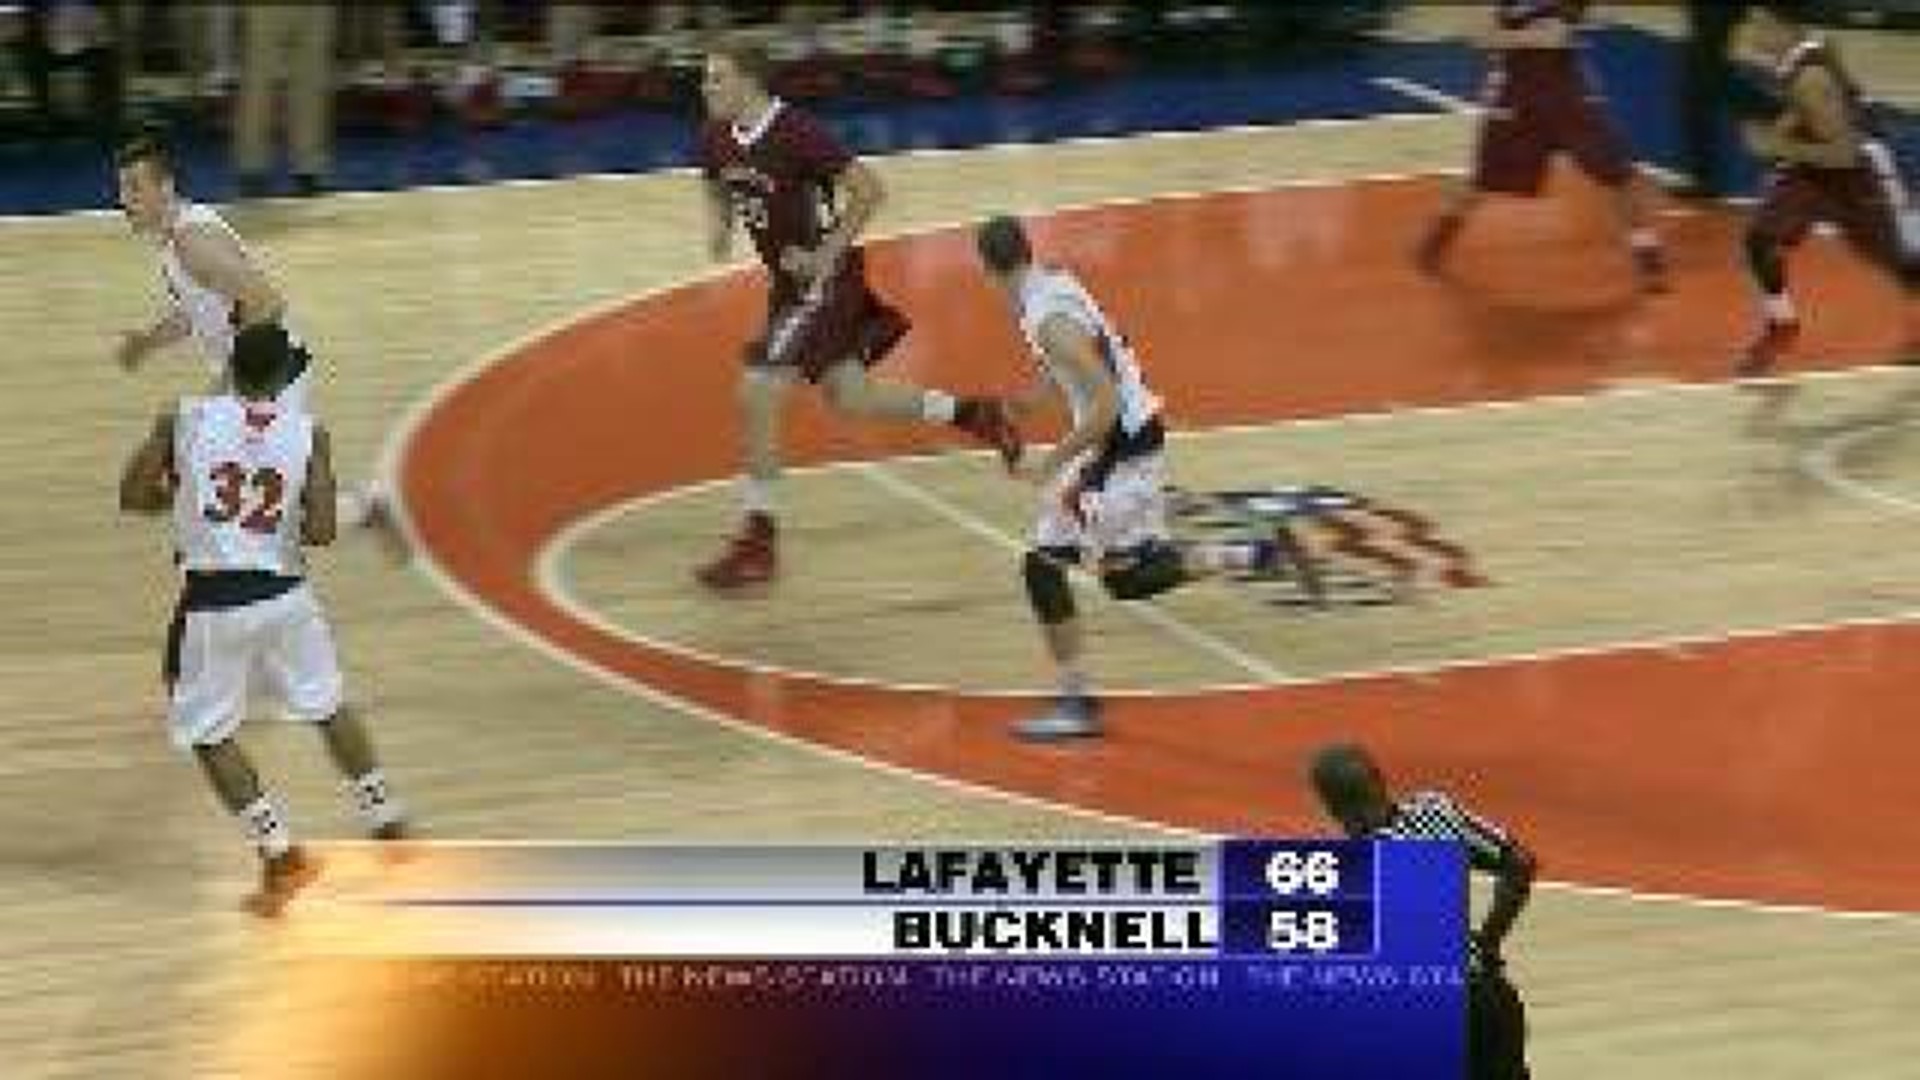 Bucknell vs Lafayette